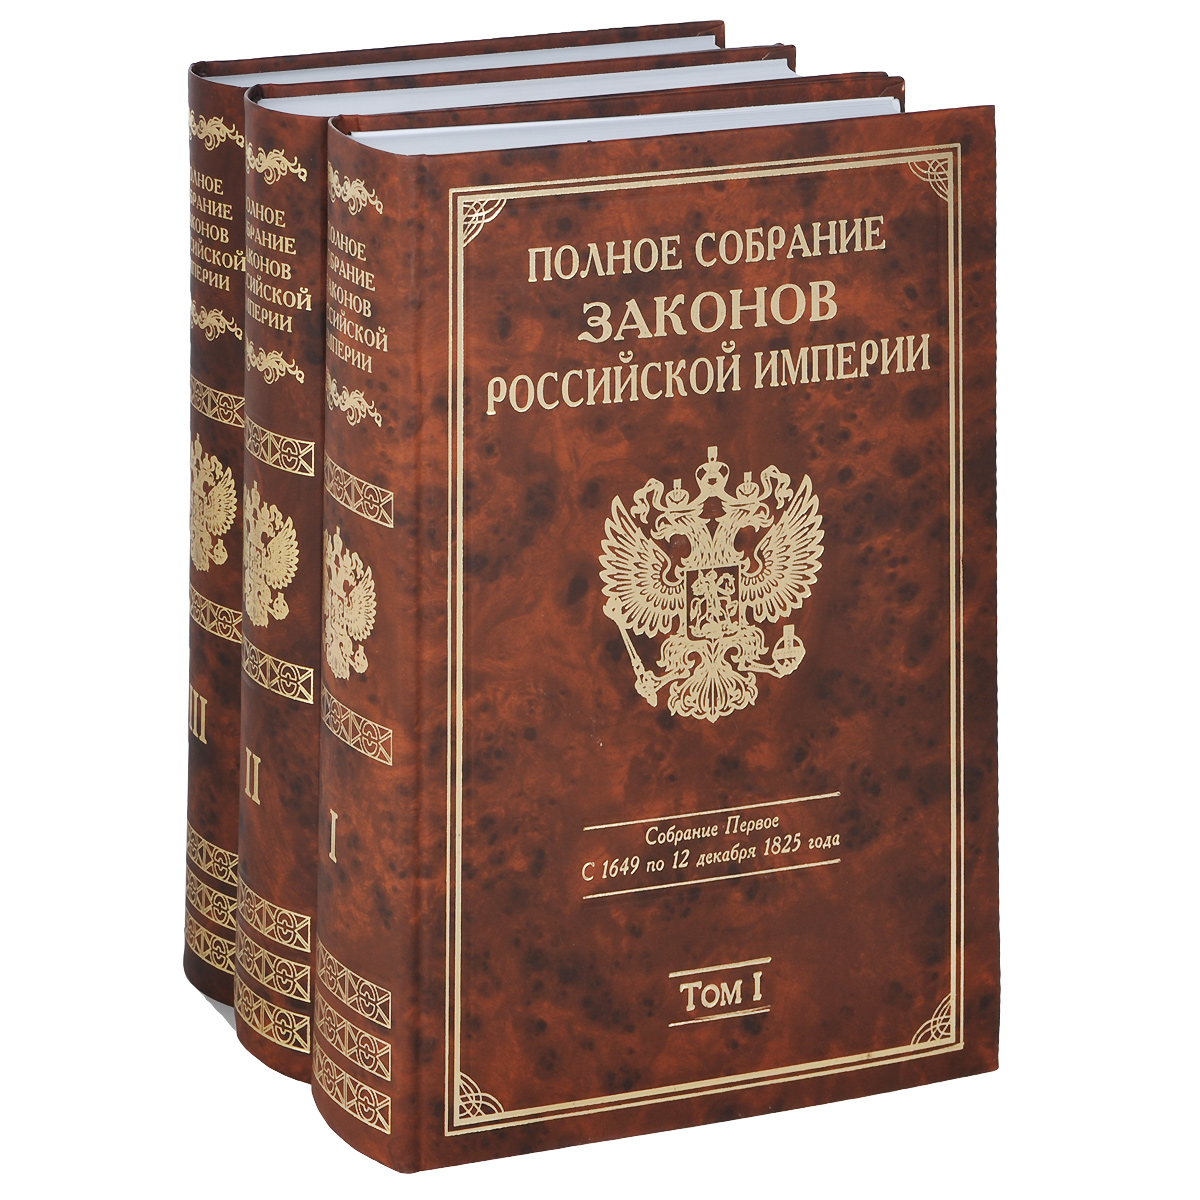 Полное собрание законов Российской империи собрание первое